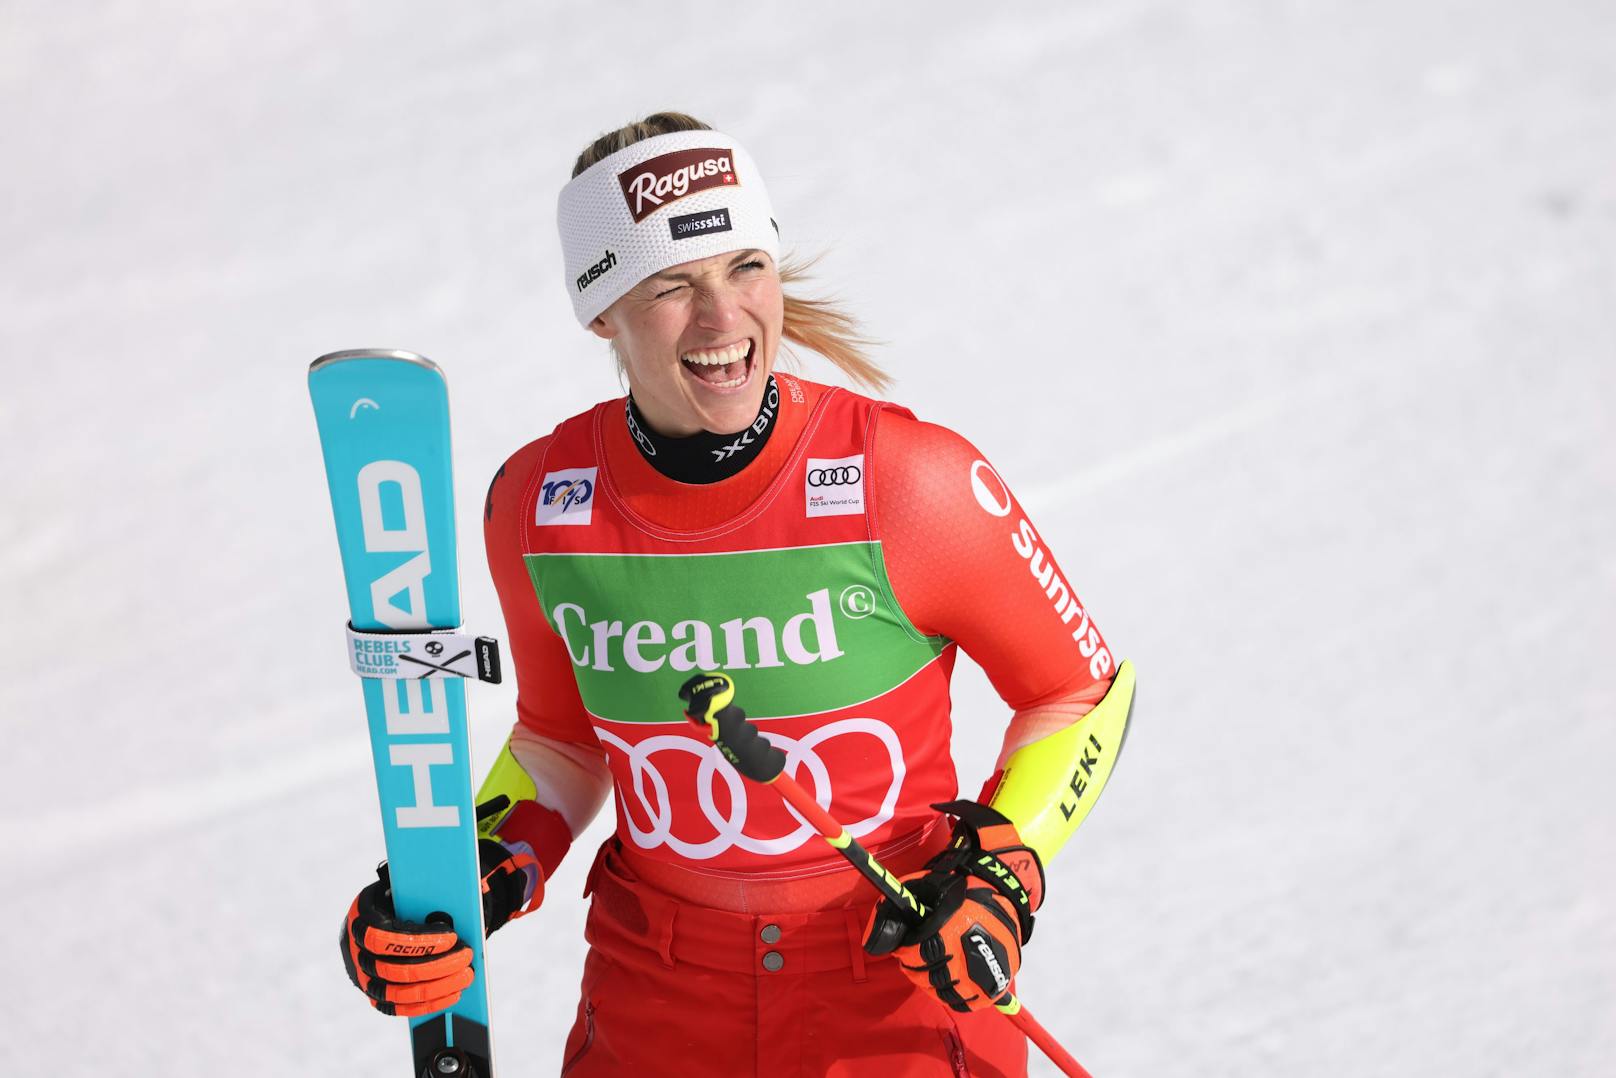 Nach der Absage der Rennen in Garmisch-Partenkirchen, ging es in Soldeu weiter. Wieder hieß die Siegerin Lara Gut-Behrami, die sich mit dem ersten Platz die Führung im Gesamtweltcup sicherte. Ricarda Haaser fuhr als achte in die Top-10.